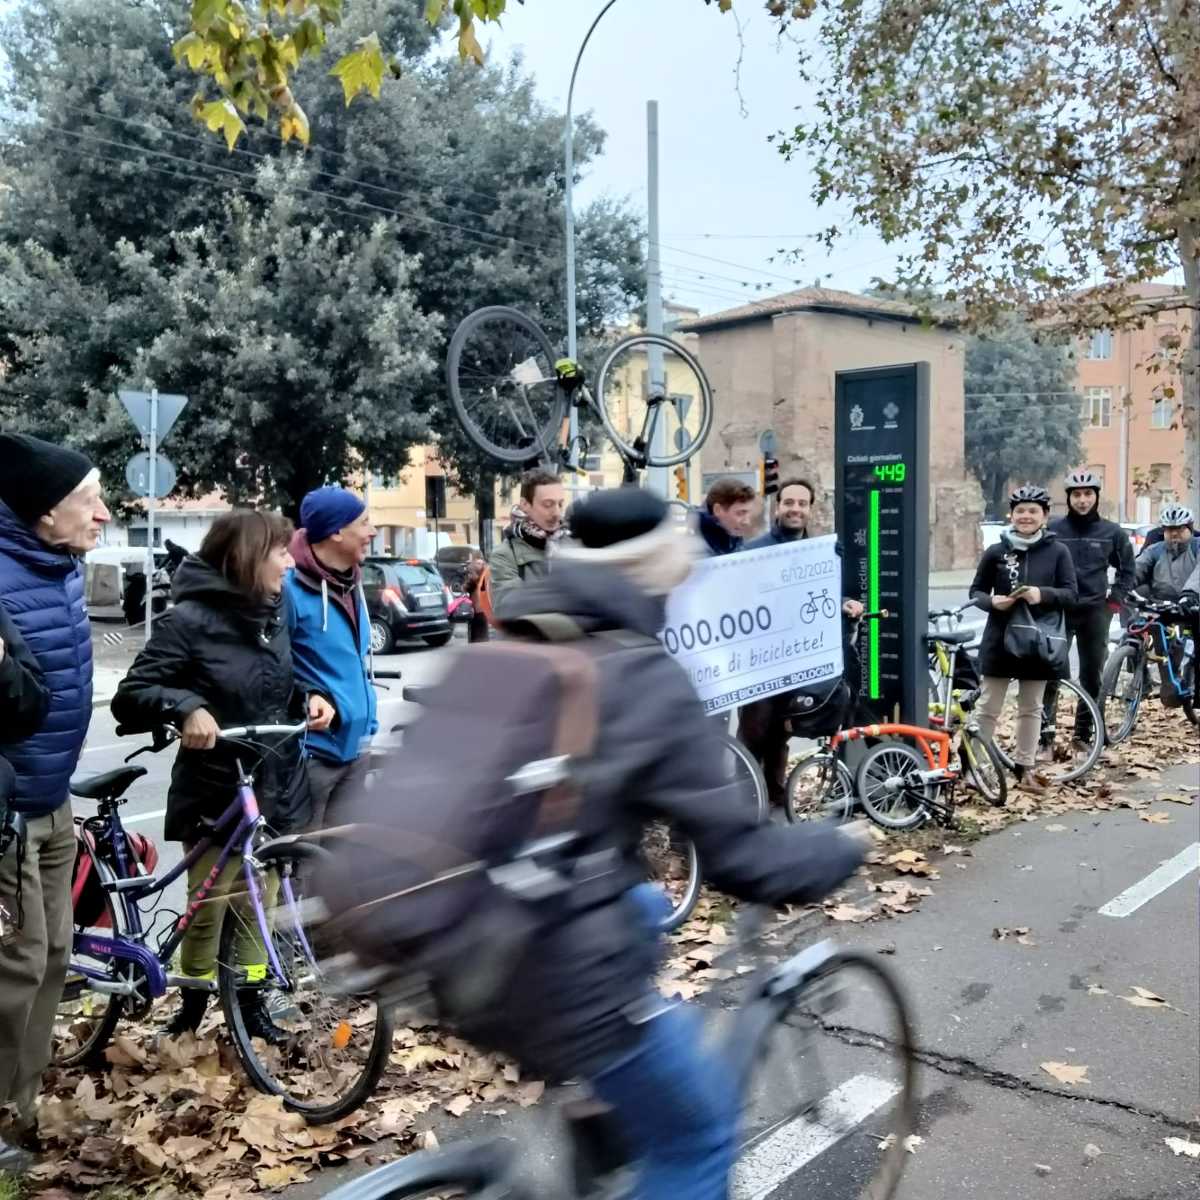 Tangenziale delle Biciclette di Bologna